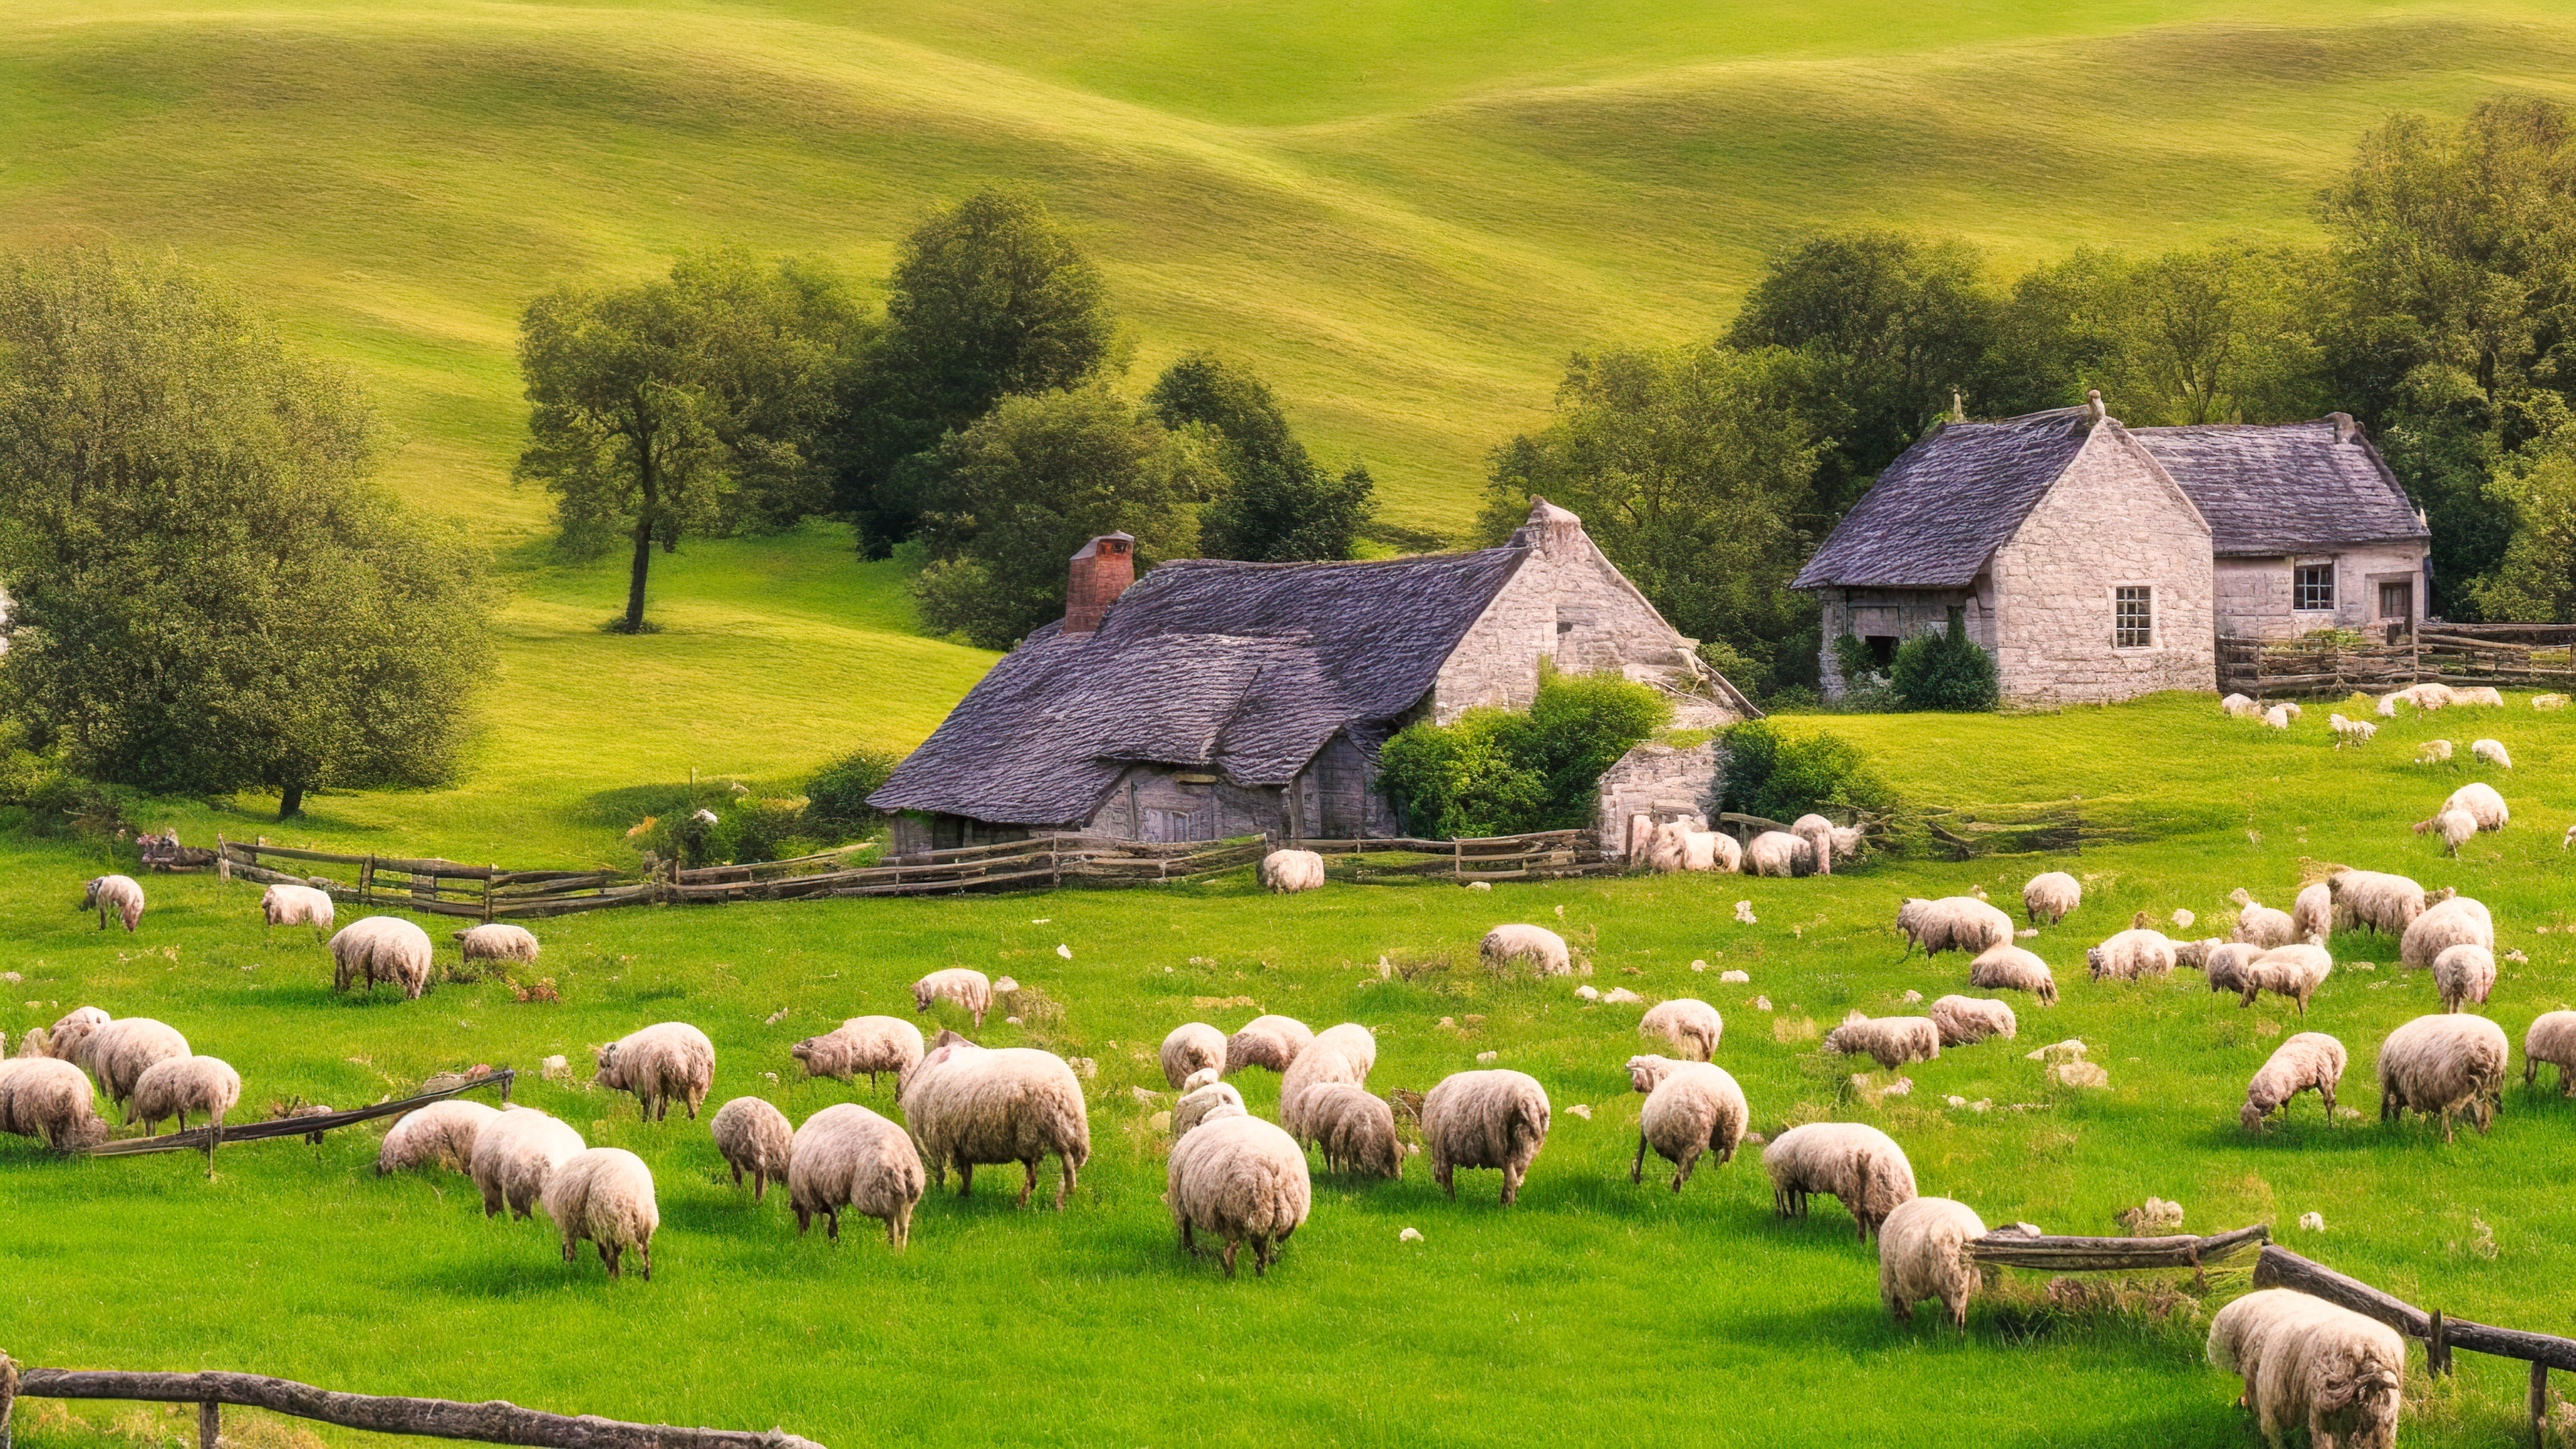 Entrez dans la tranquillité d'un paisible cottage de campagne niché parmi des collines ondulantes, entouré de moutons qui paissent, avec notre fond d'écran nature en 4K pour votre ordinateur portable.